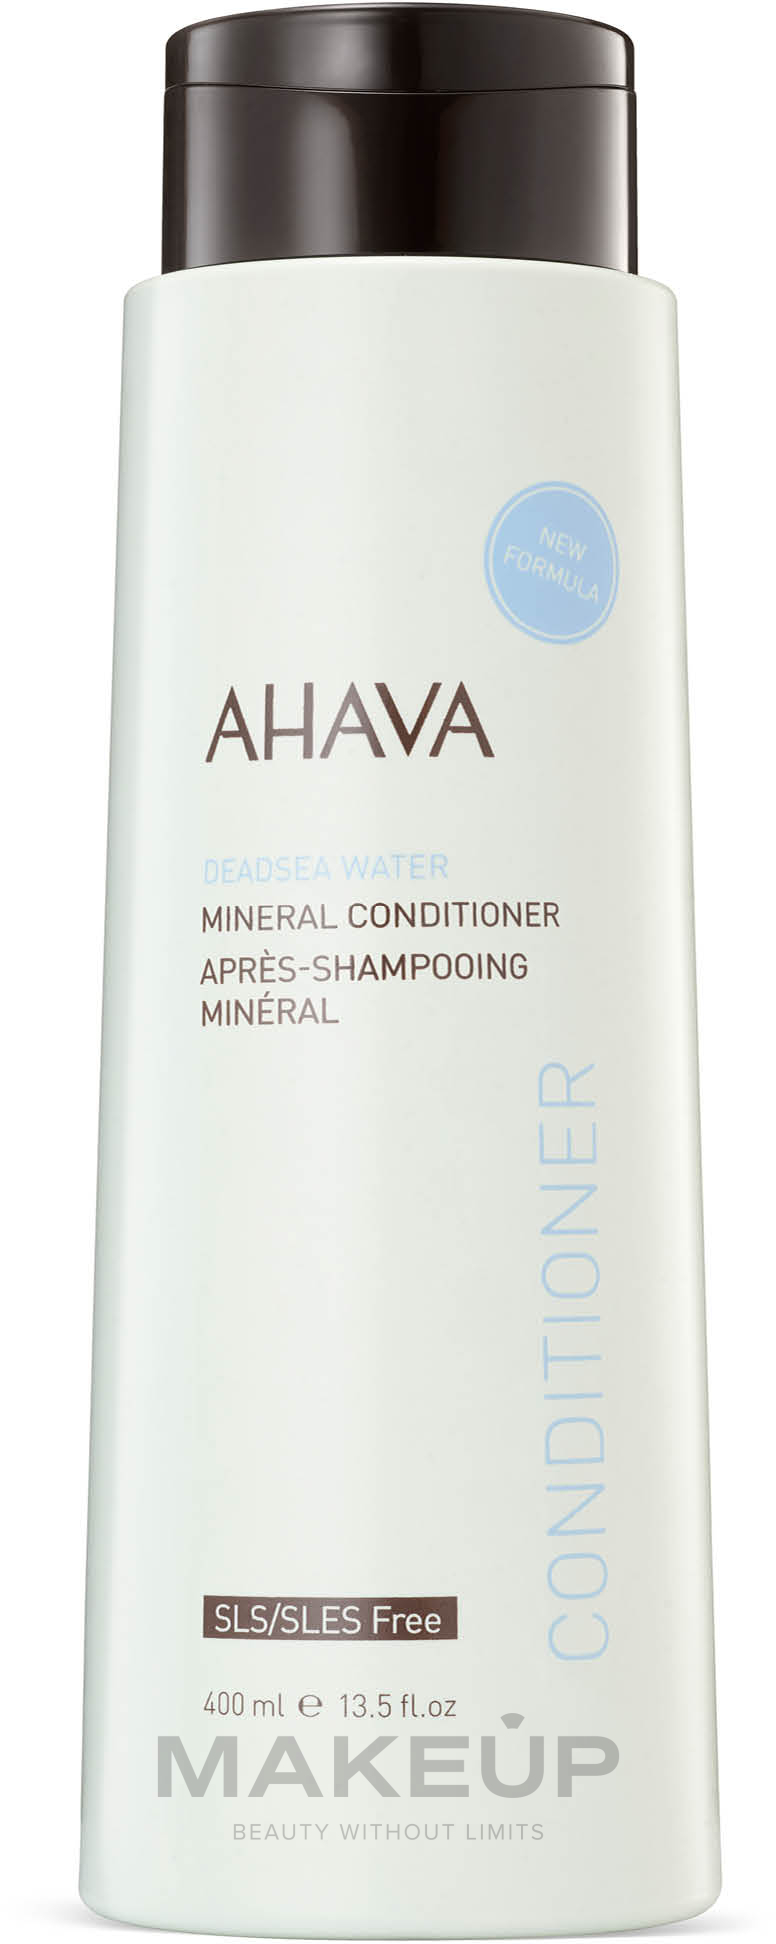 Mineralbalsam für weiches und elastisches Haar - Ahava Deadsea Water Mineral Conditioner — Foto 400 ml